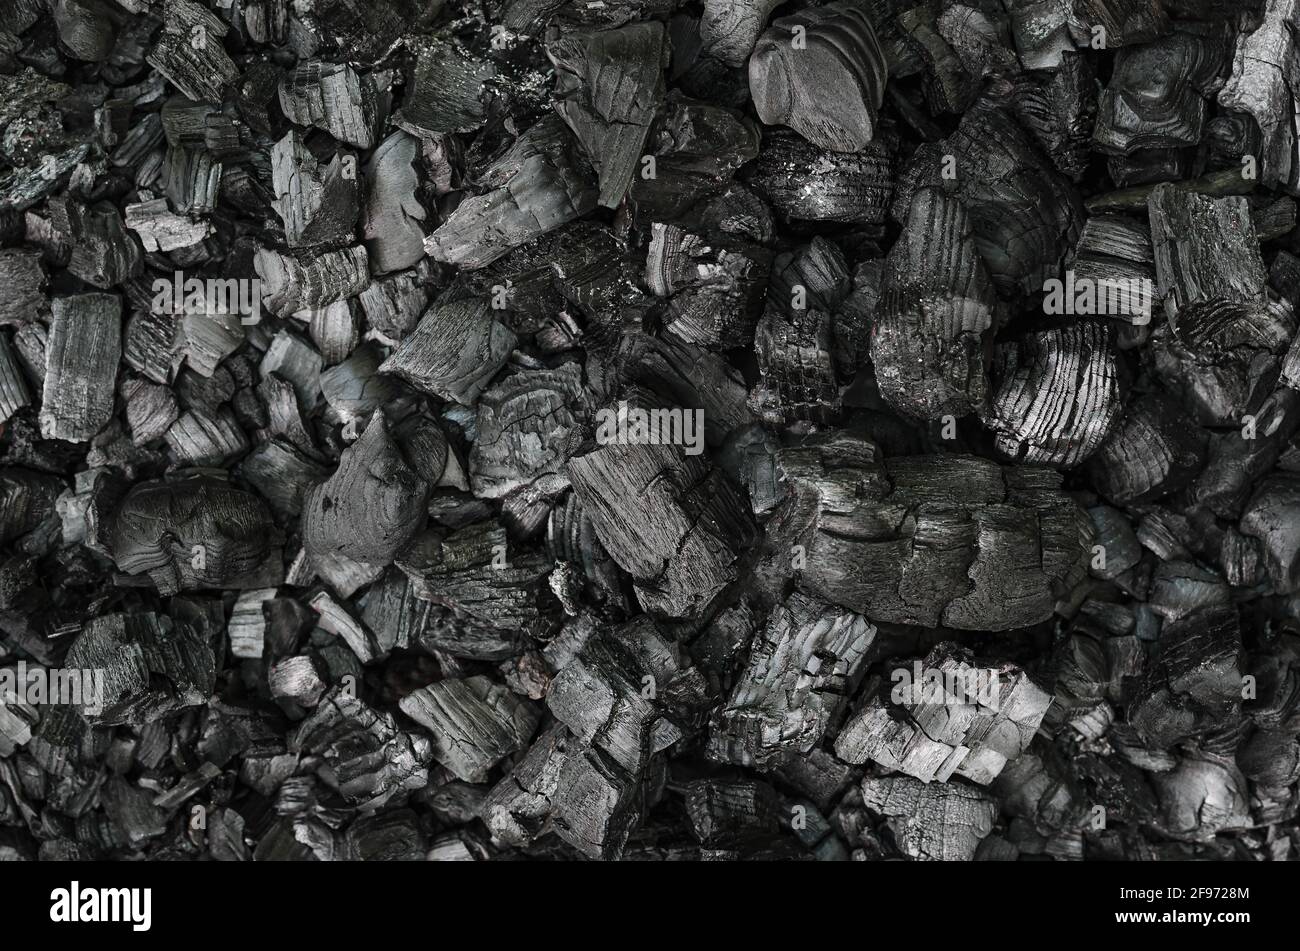 Pezzi neri e grigi di rami bruciati, nei resti di un incendio estinto. Rami carbonizzati e pezzi grandi di carbone sulla terra. Foto Stock